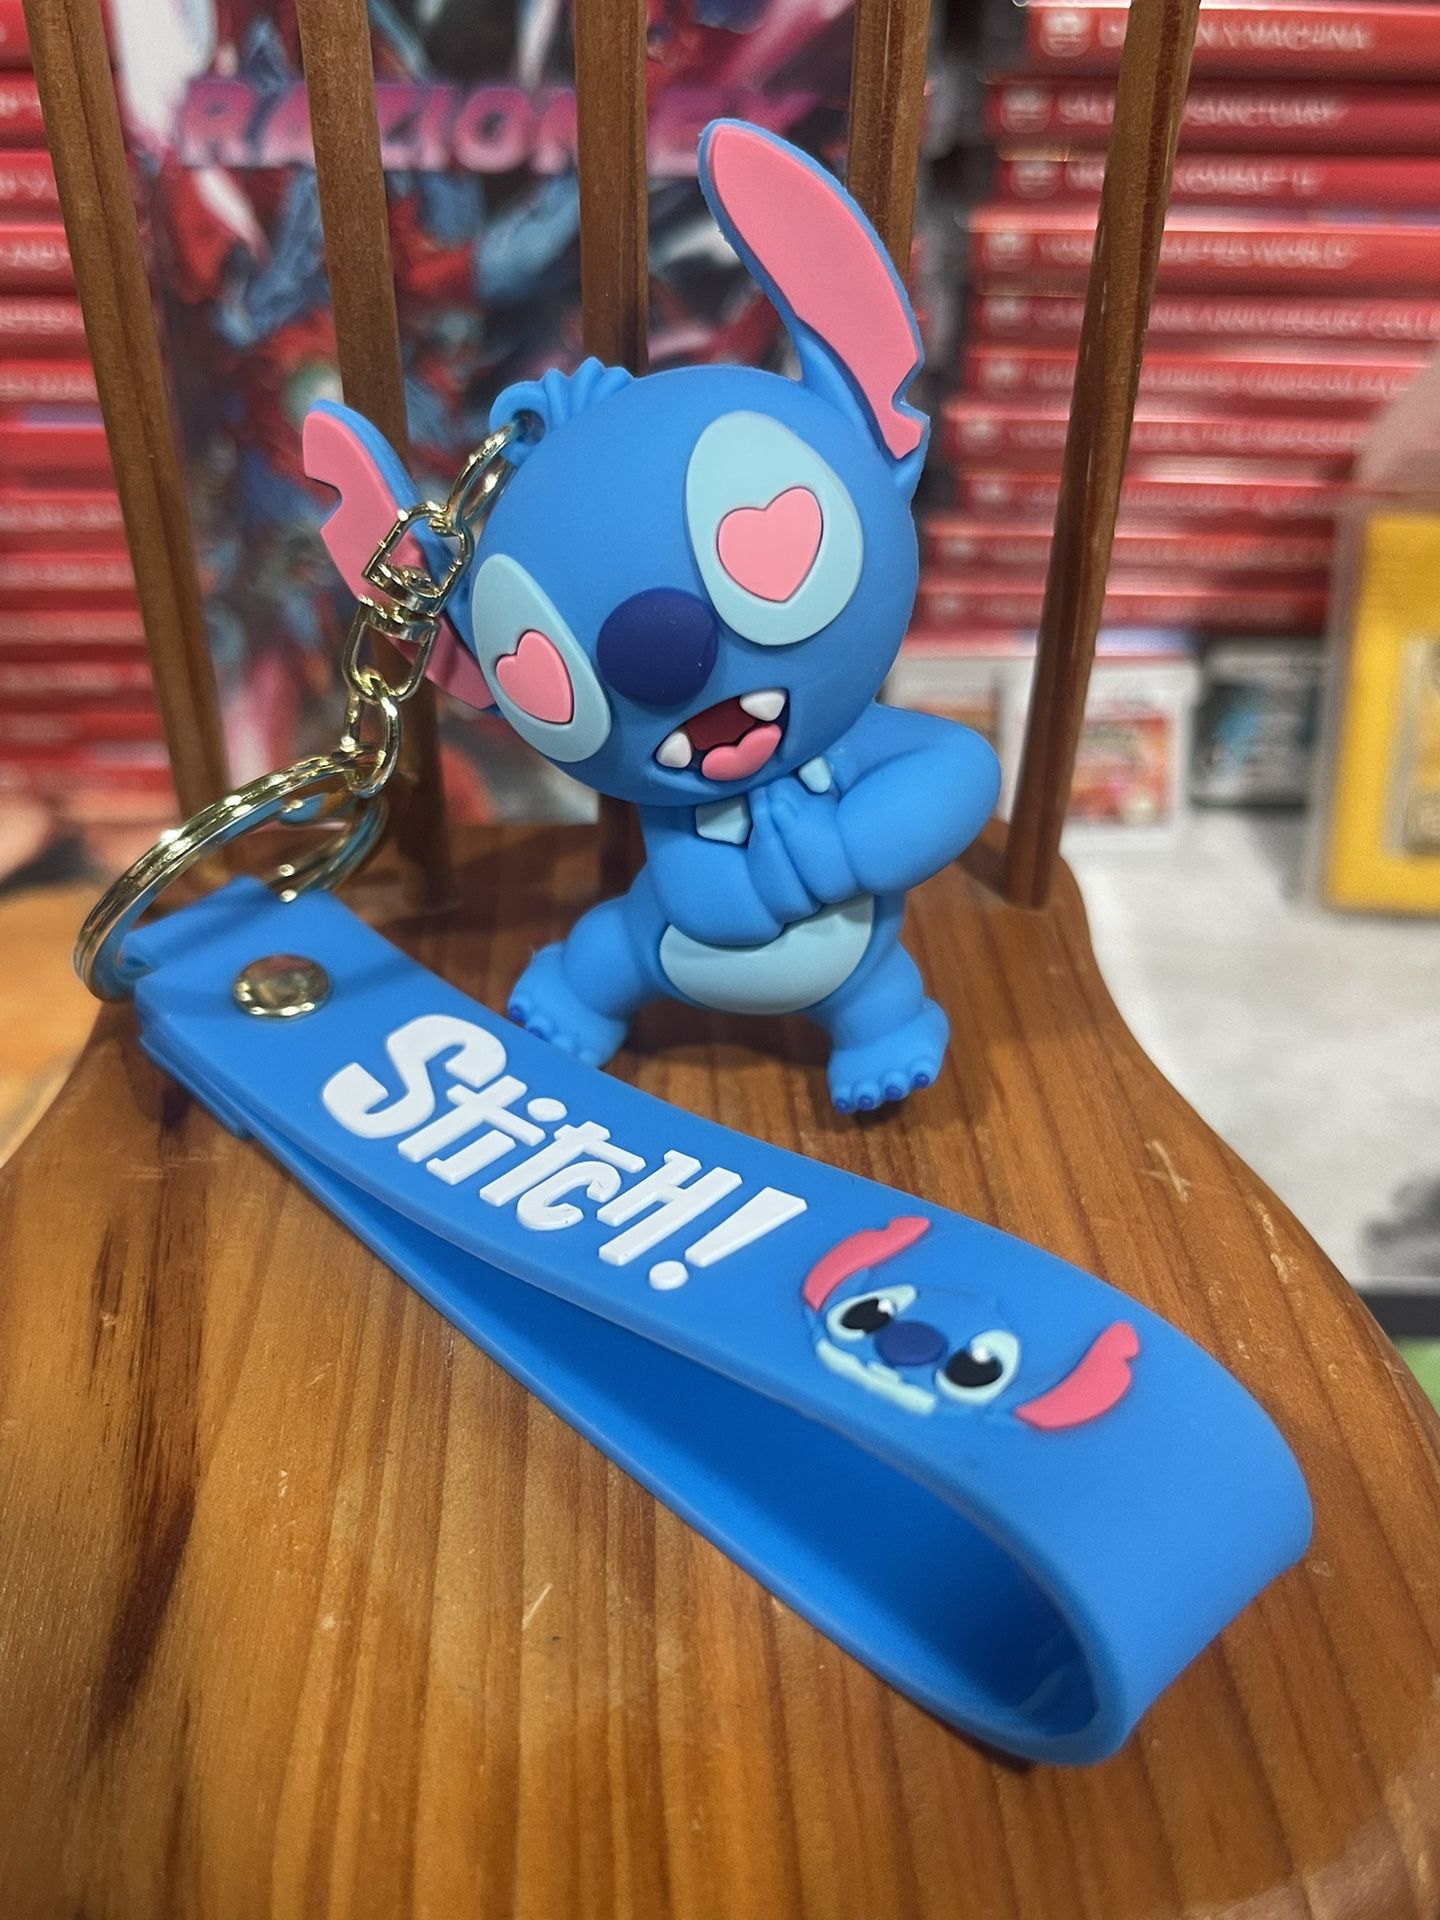 Disney Stitch Keychain